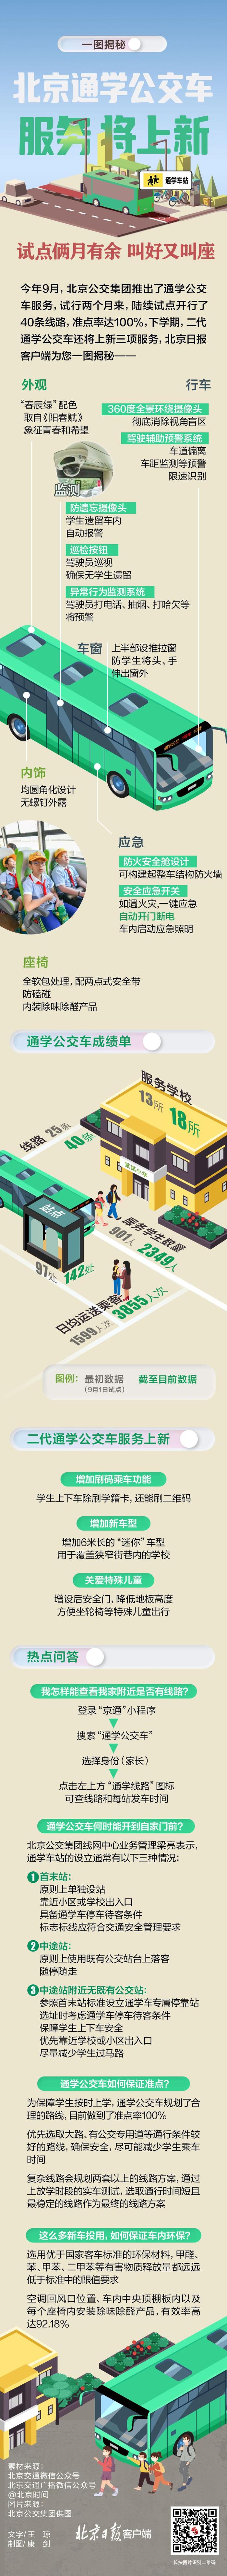 北京公交客户端(北京公交app使用说明)